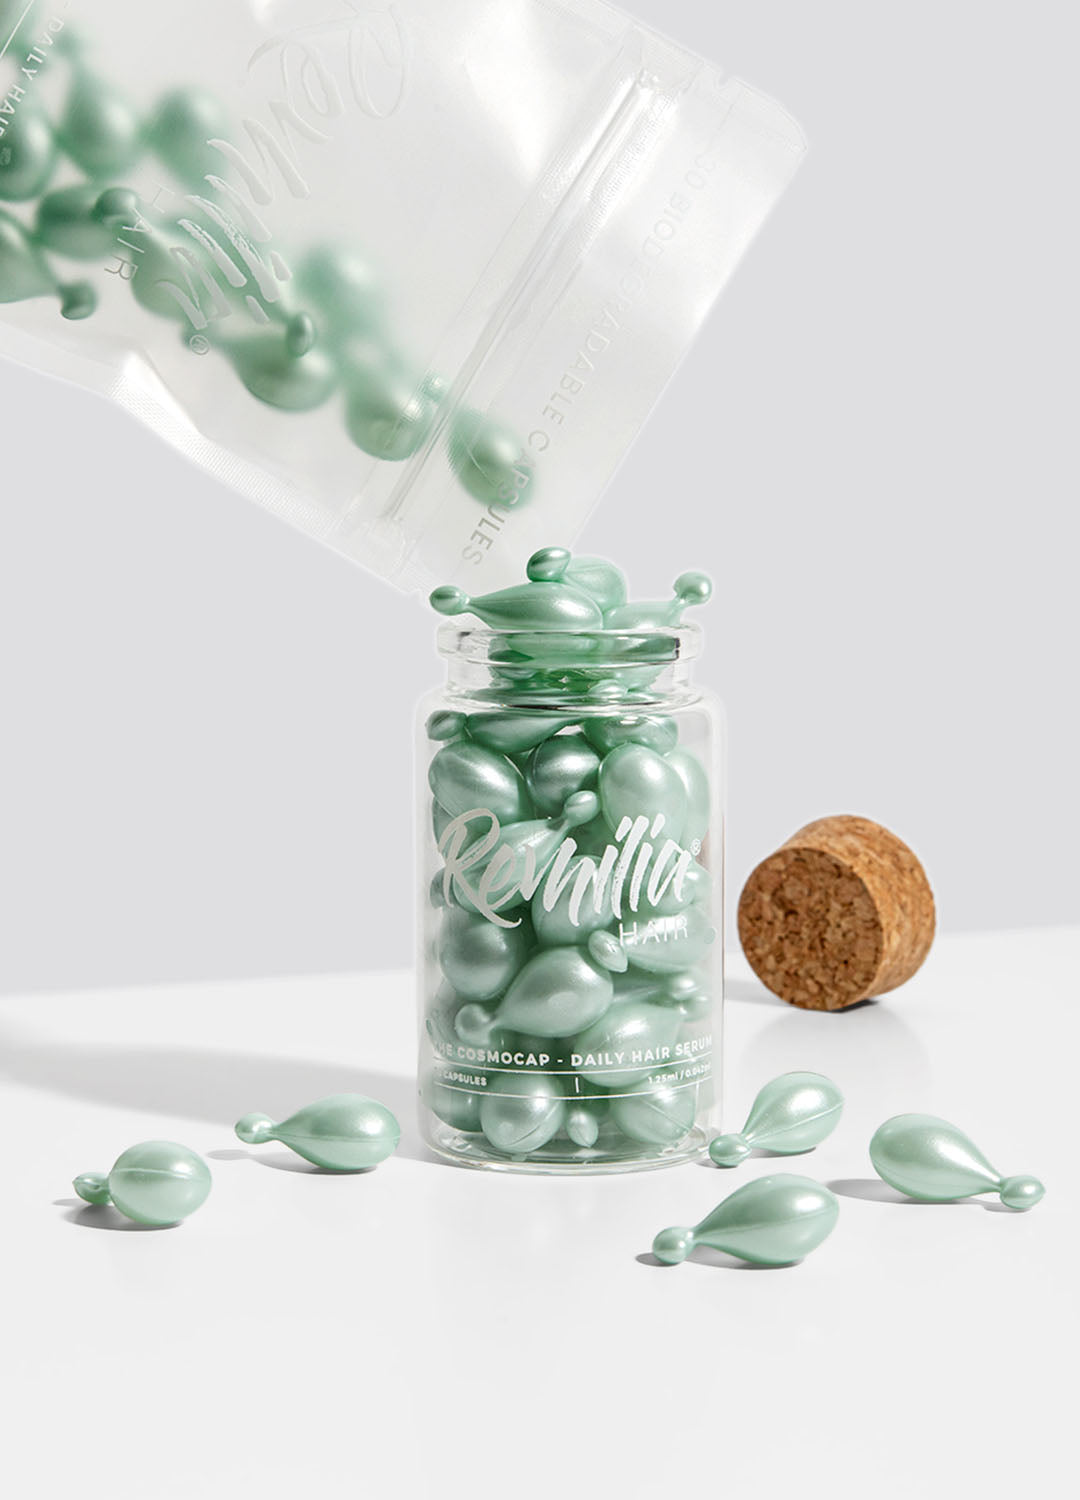 Remiliahair cosmocap refill bag jar cork top biodegradable caps